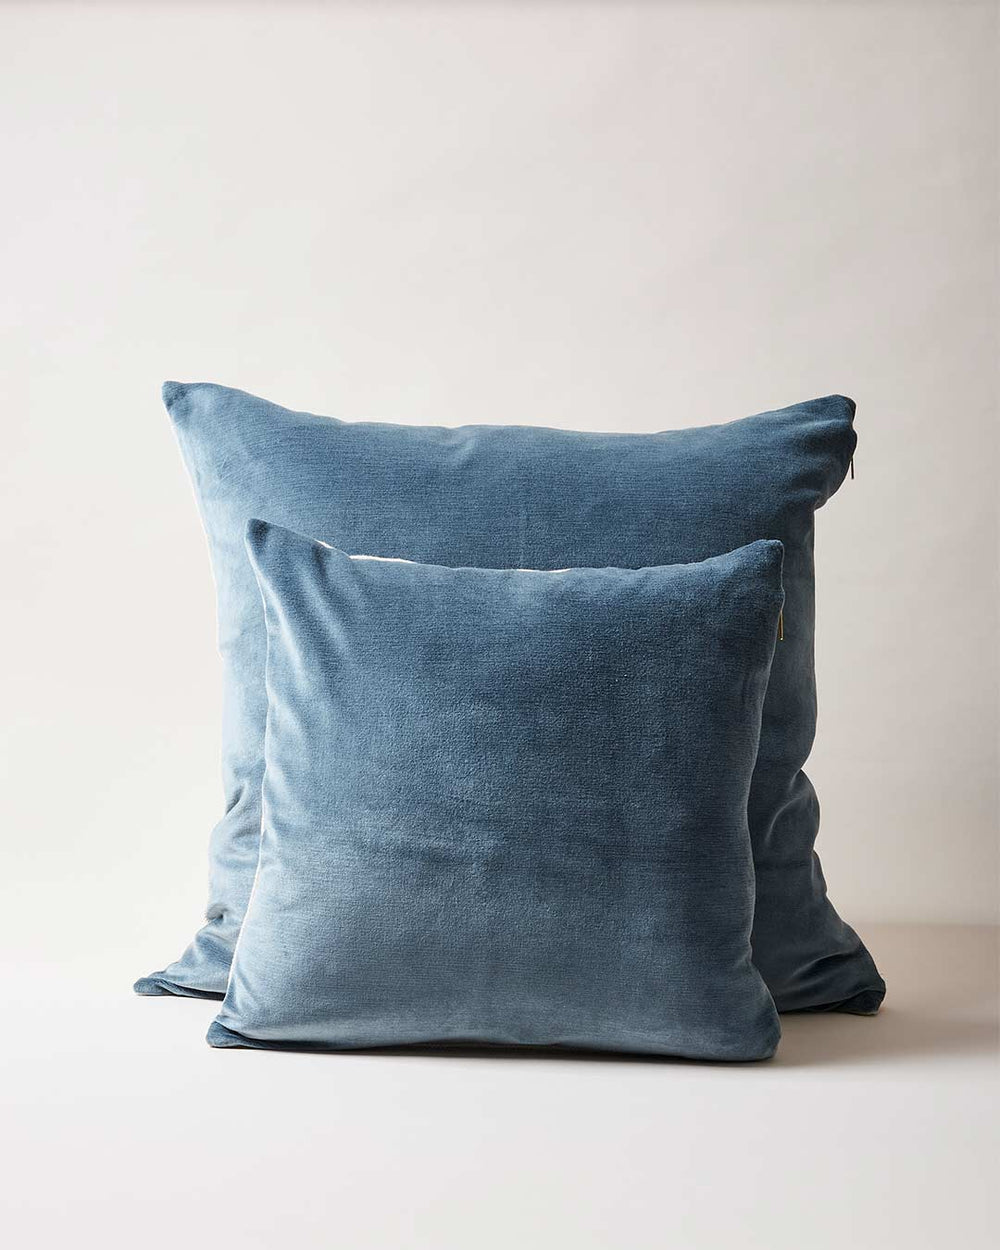 https://www.farmhousepottery.com/cdn/shop/products/velvet-and-linen-pillows-slate-blue.jpg?v=1659554837&width=1000